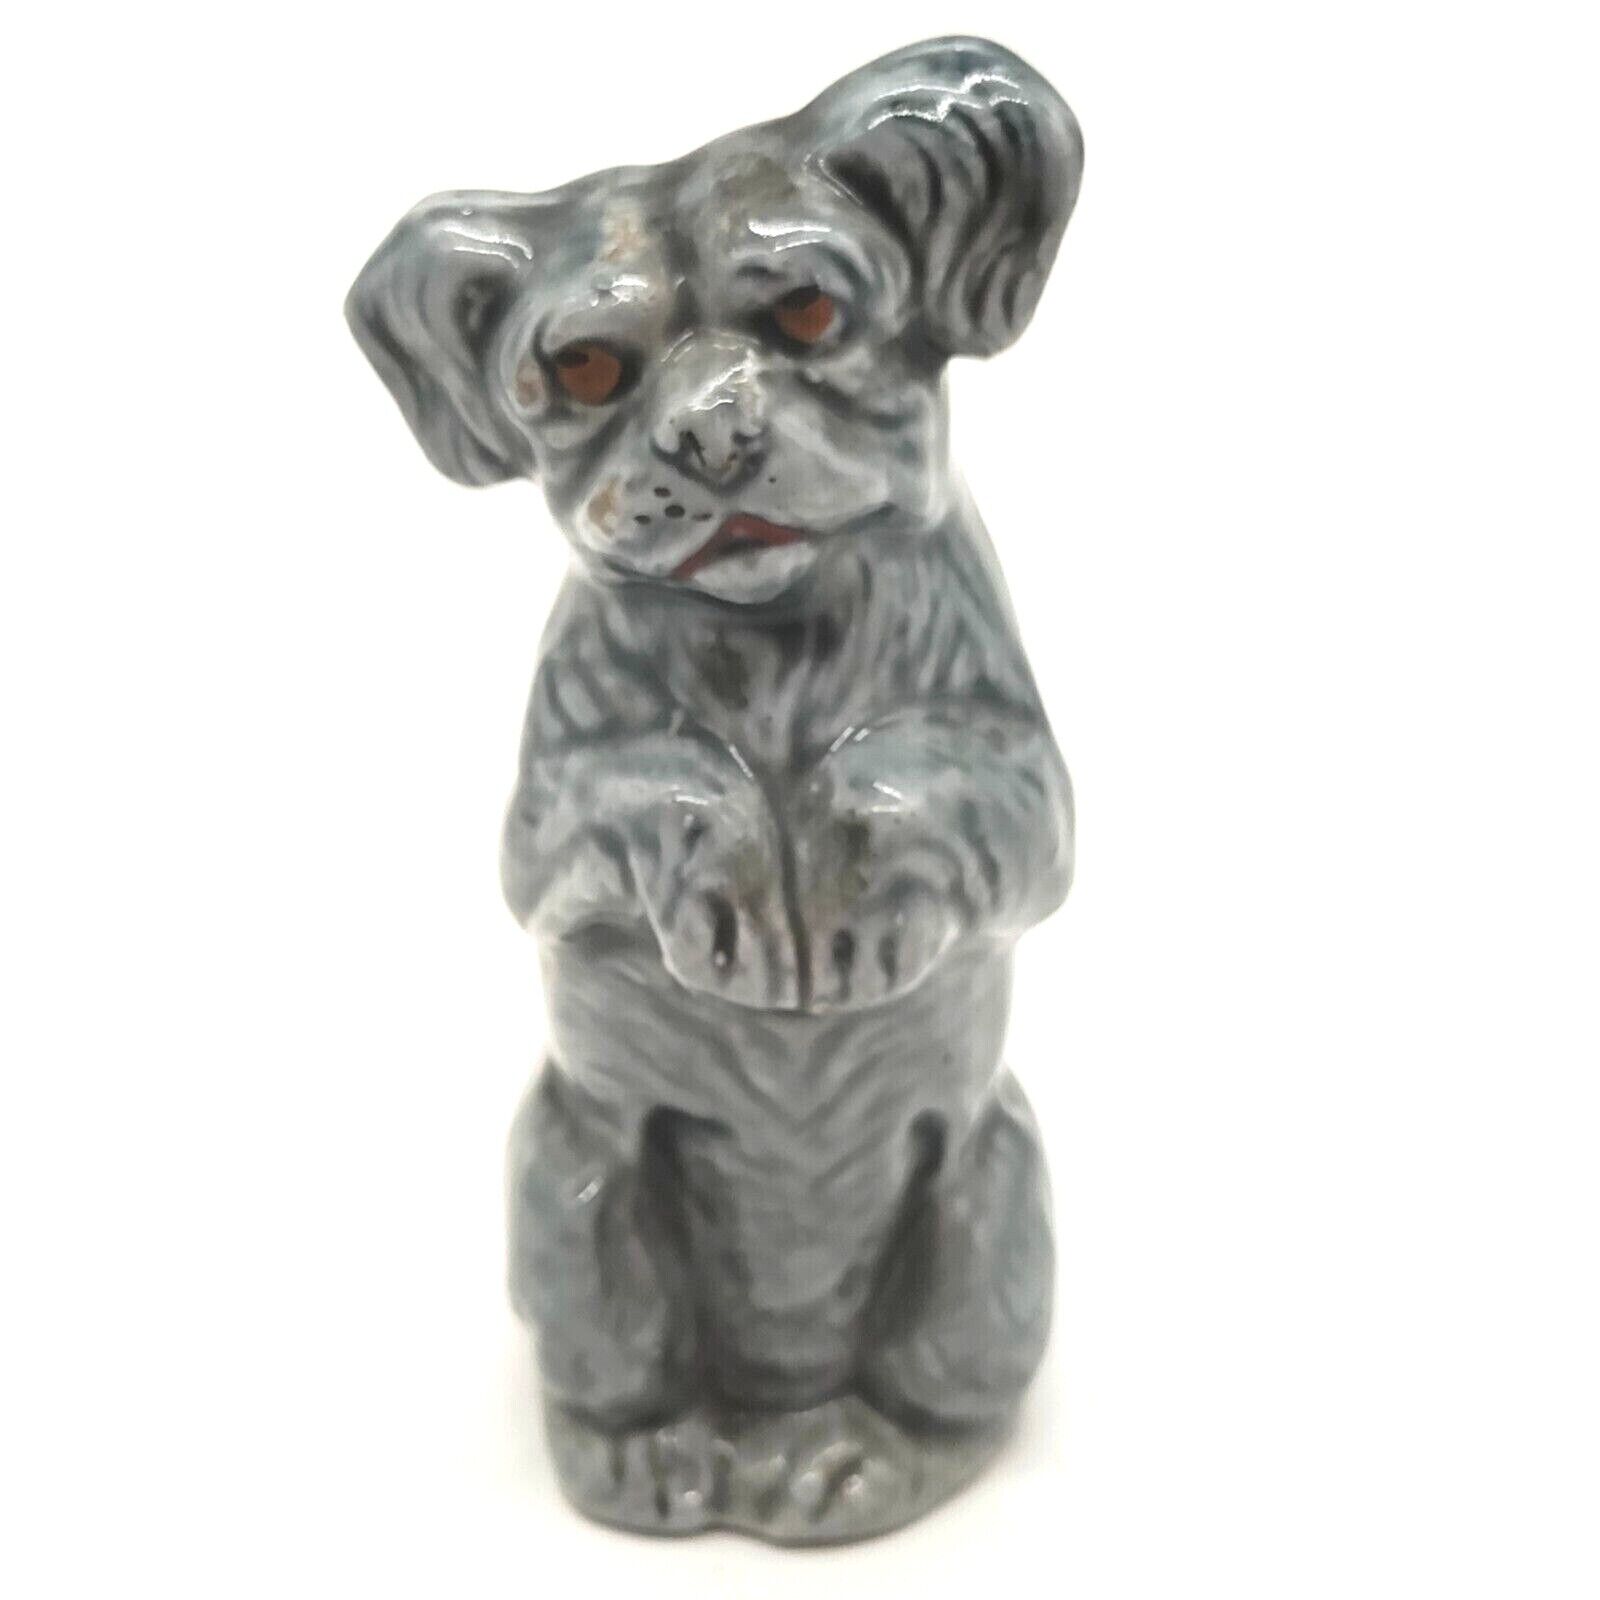 Vintage Ceramic Begging Dog Figurine Made In Germany